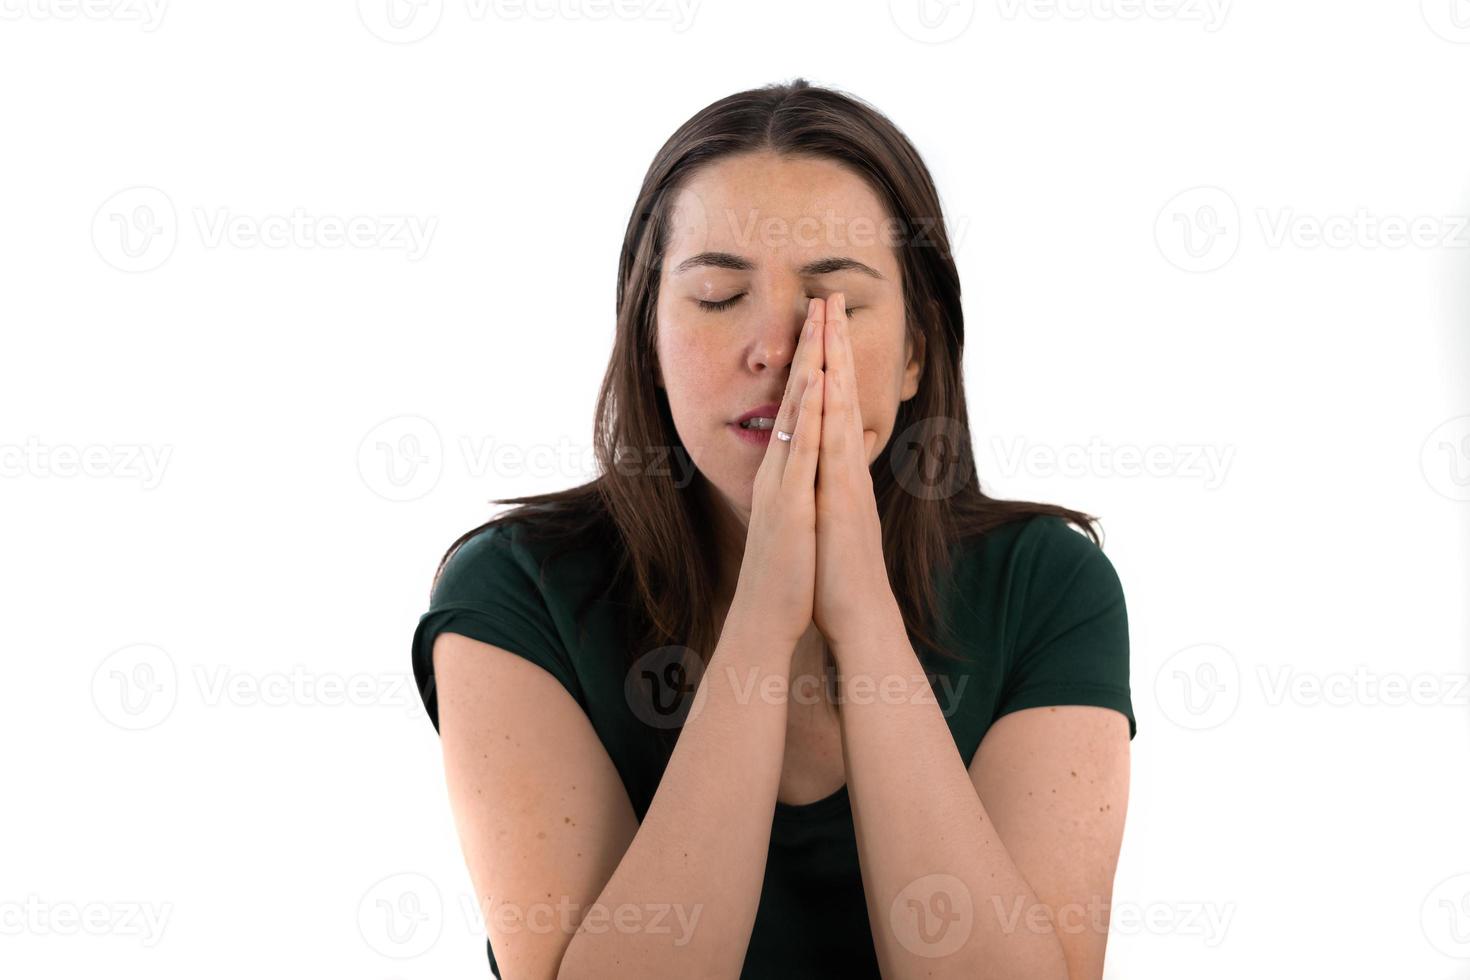 jeune fille aux cheveux longs avec ses mains jointes sur son visage en prière photo